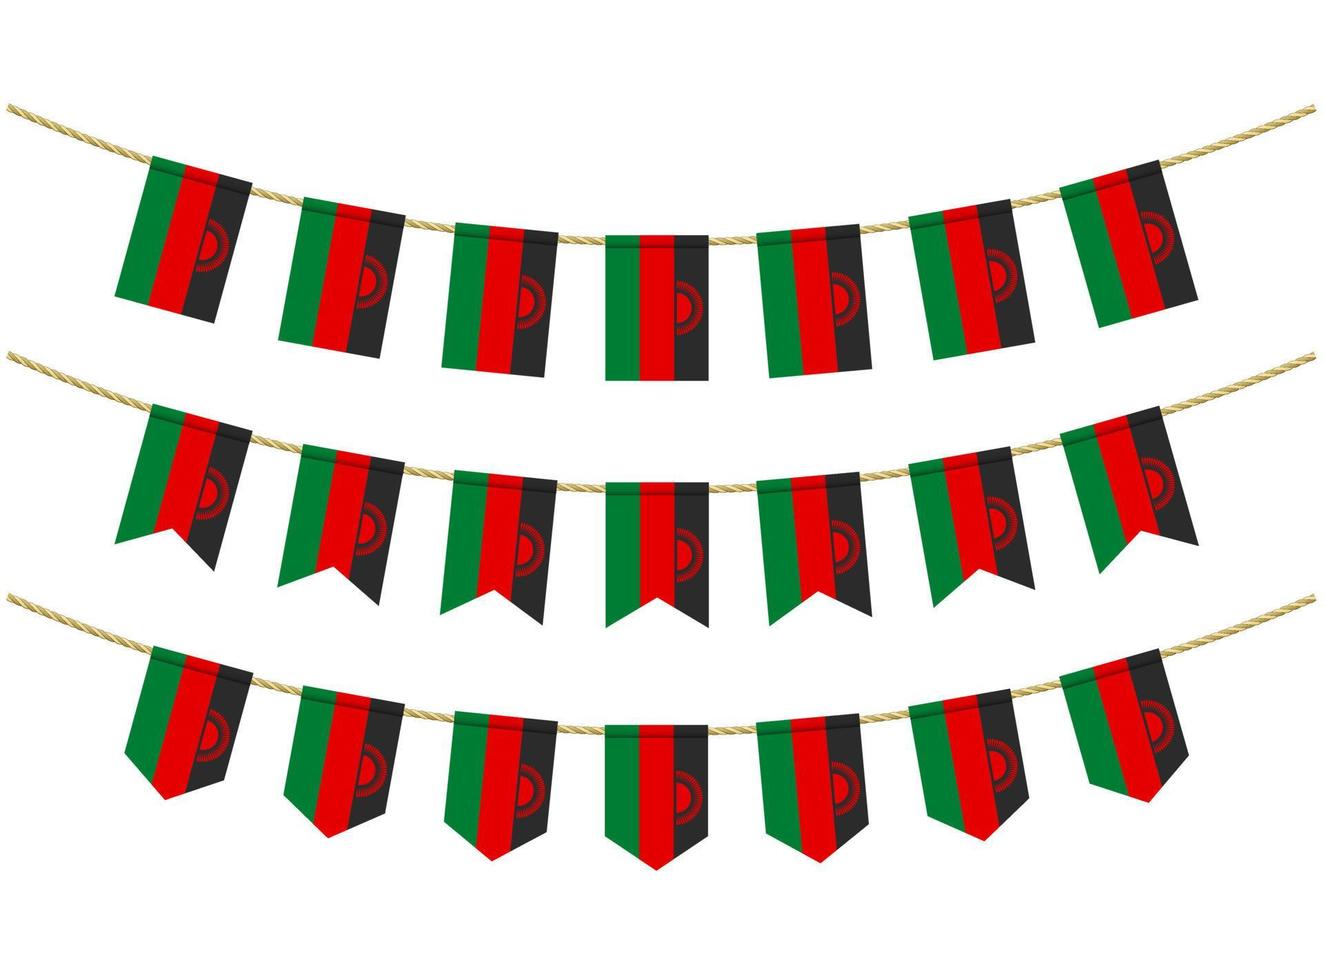 bandera de malawi en las cuerdas sobre fondo blanco. conjunto de banderas patrióticas del empavesado. decoración del empavesado de la bandera de malawi vector